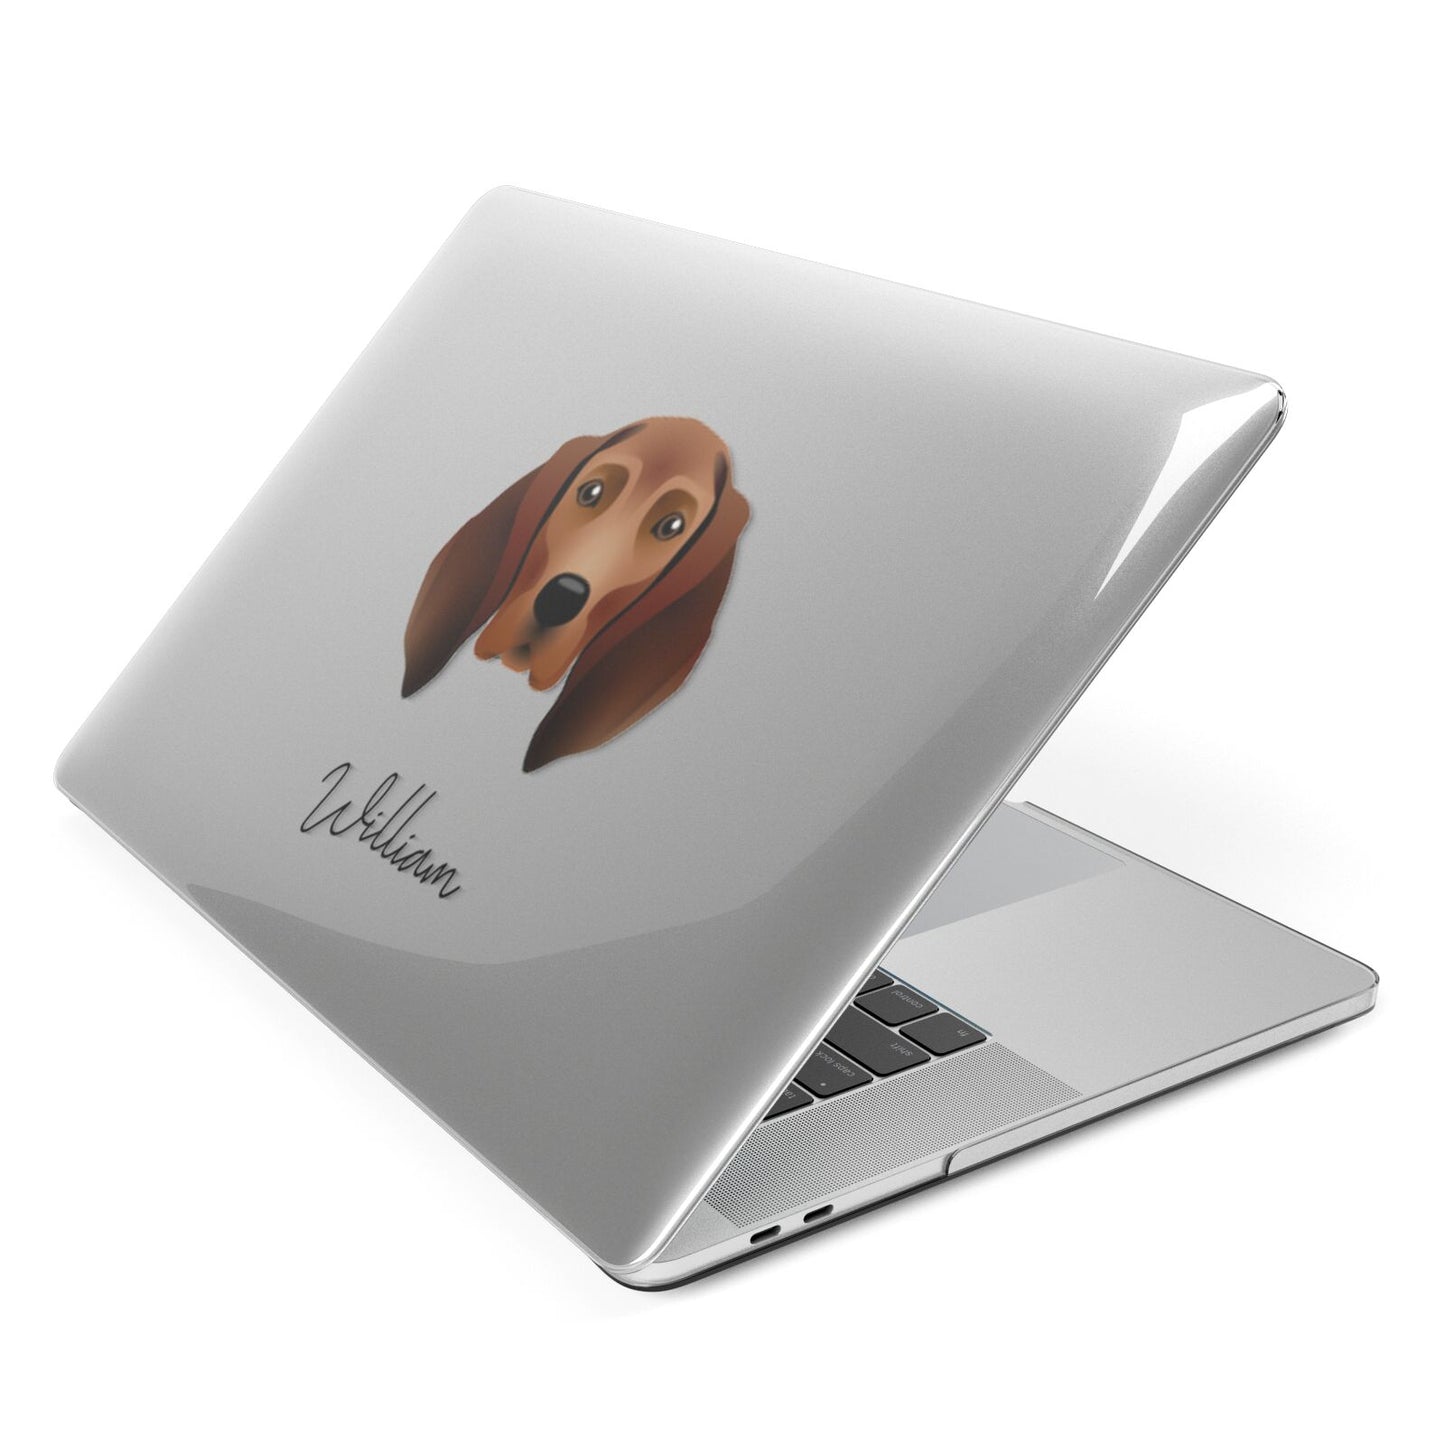 Redbone Coonhound Personalised Apple MacBook Case Side View